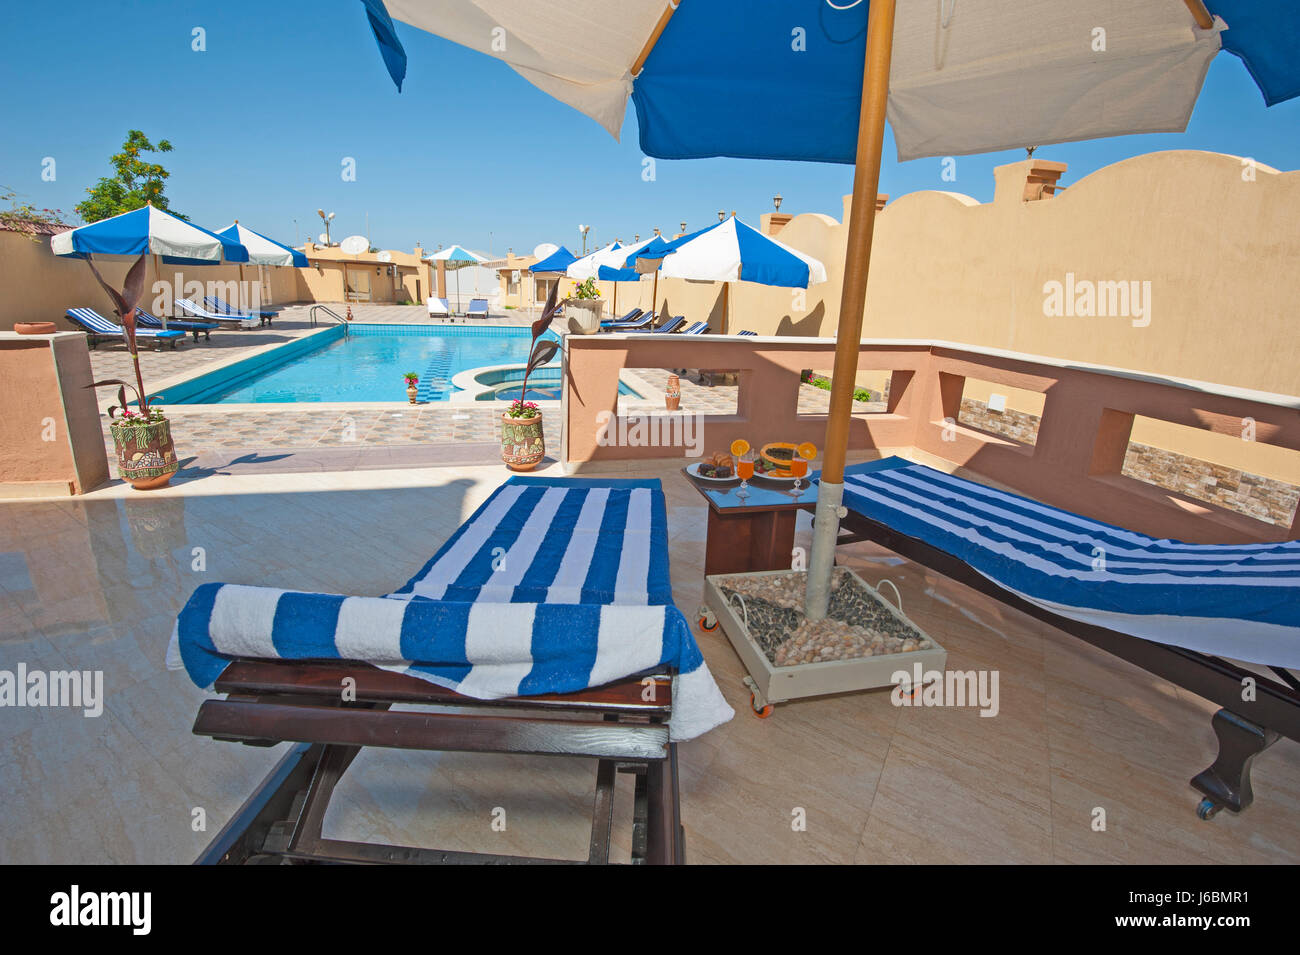 Villa di lusso show home in estate tropicale resort per vacanze con piscina e lettini per prendere il sole Foto Stock